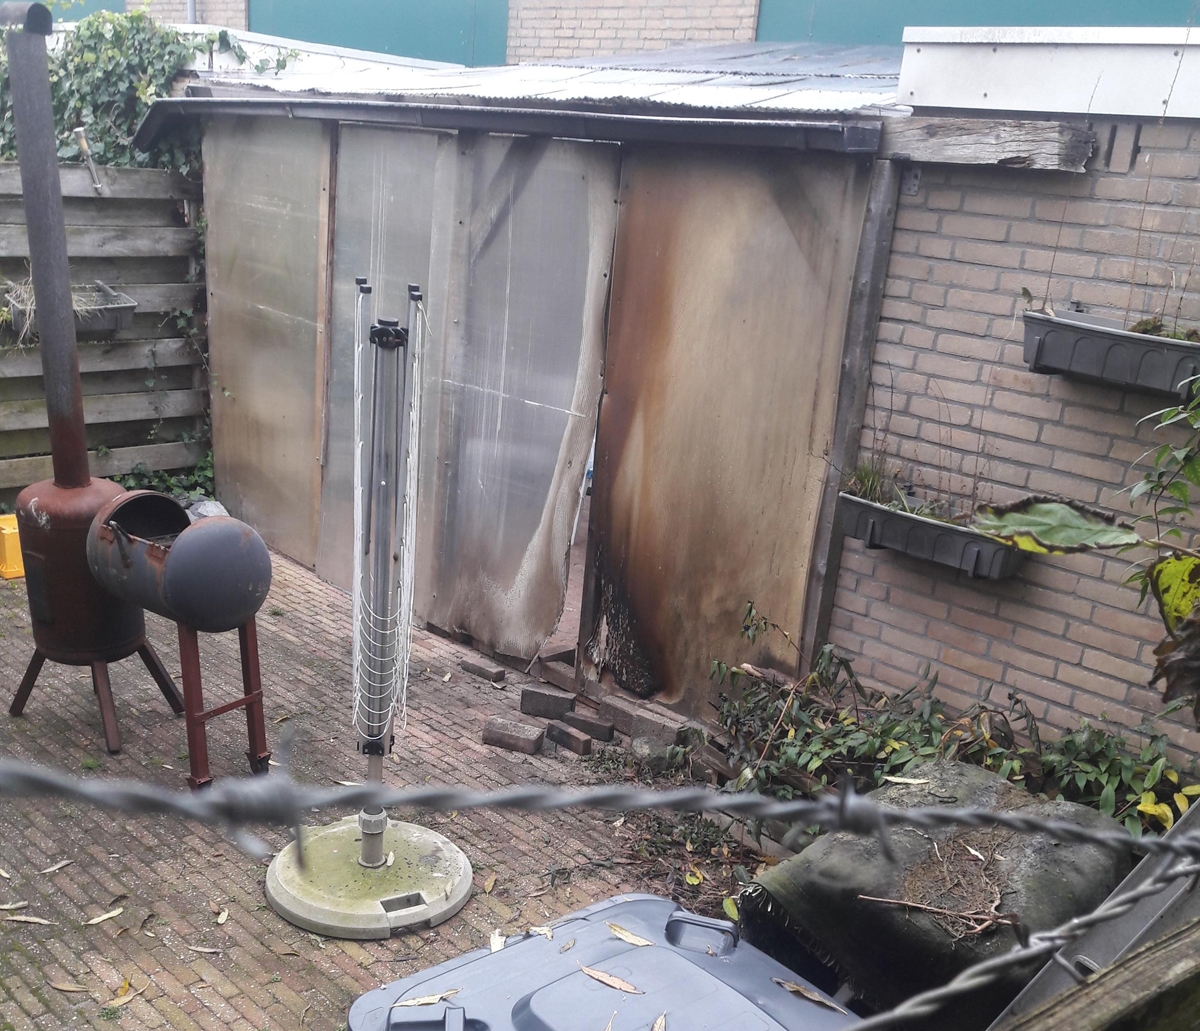 Huis in Damwâld beschadigd door 'brandbom'